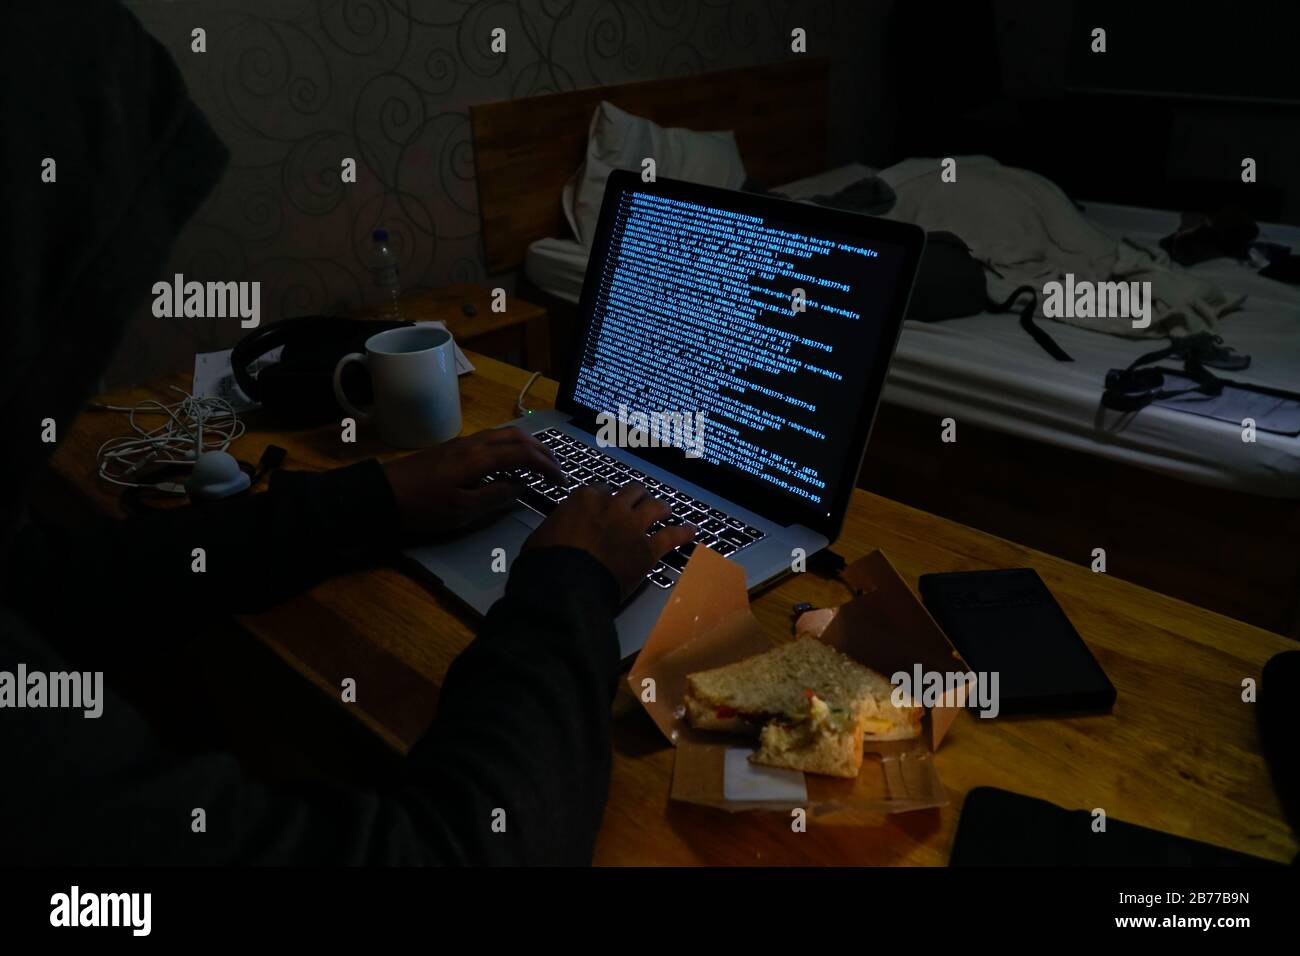 Späte Nacht Männer Computer Hacking Code in unordentliche Hotelzimmer Dunkle Internet Cyberkriminalität Sicherheitsverstöße Informationen handeln Kreditkartenbetrug Identitätsdiebstahl. Stockfoto